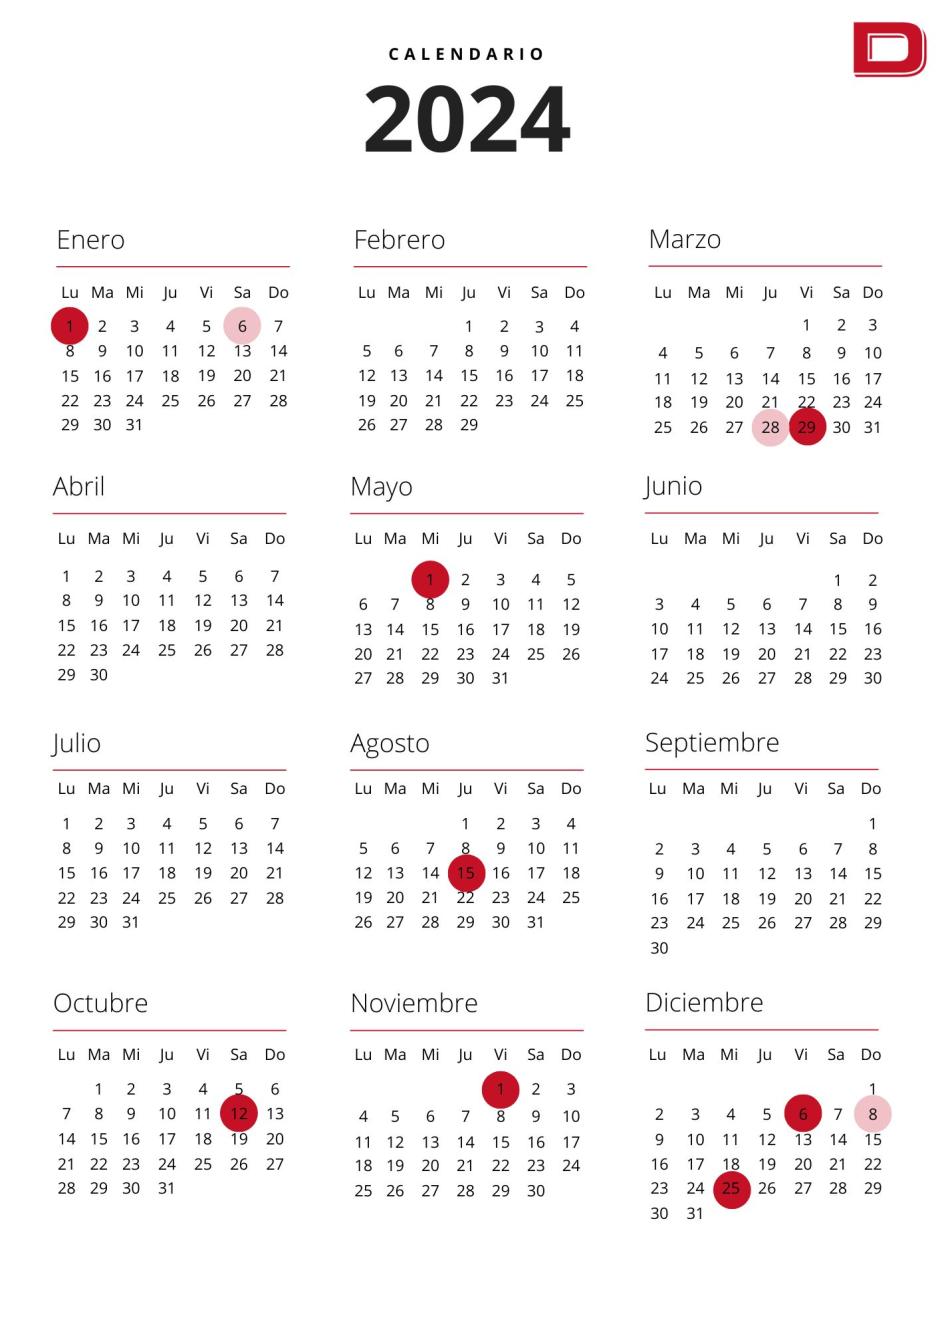 Calendario laboral 2024 estos son los días festivos y puentes